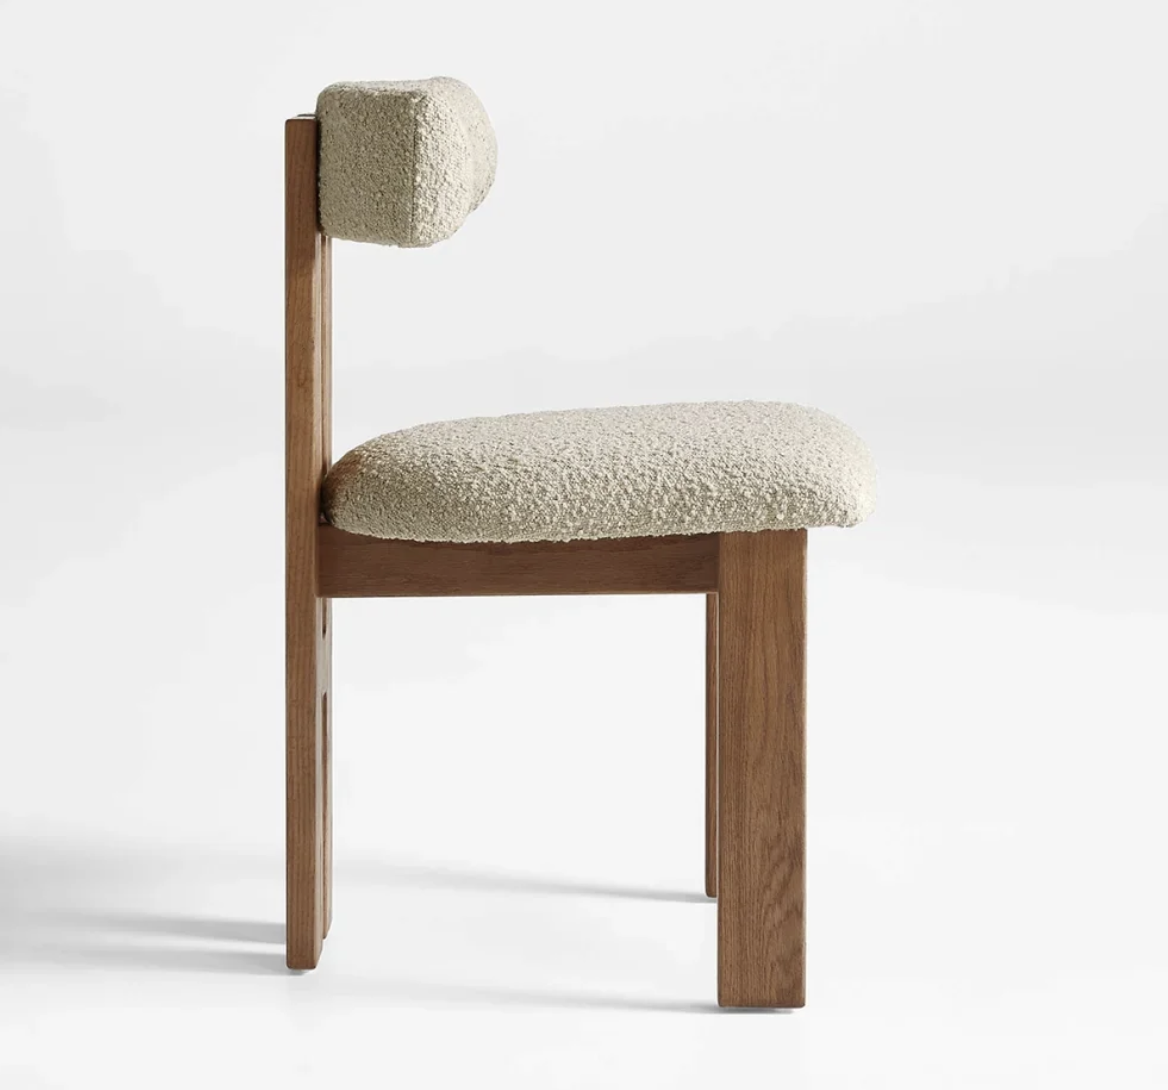 Rustic modern chair